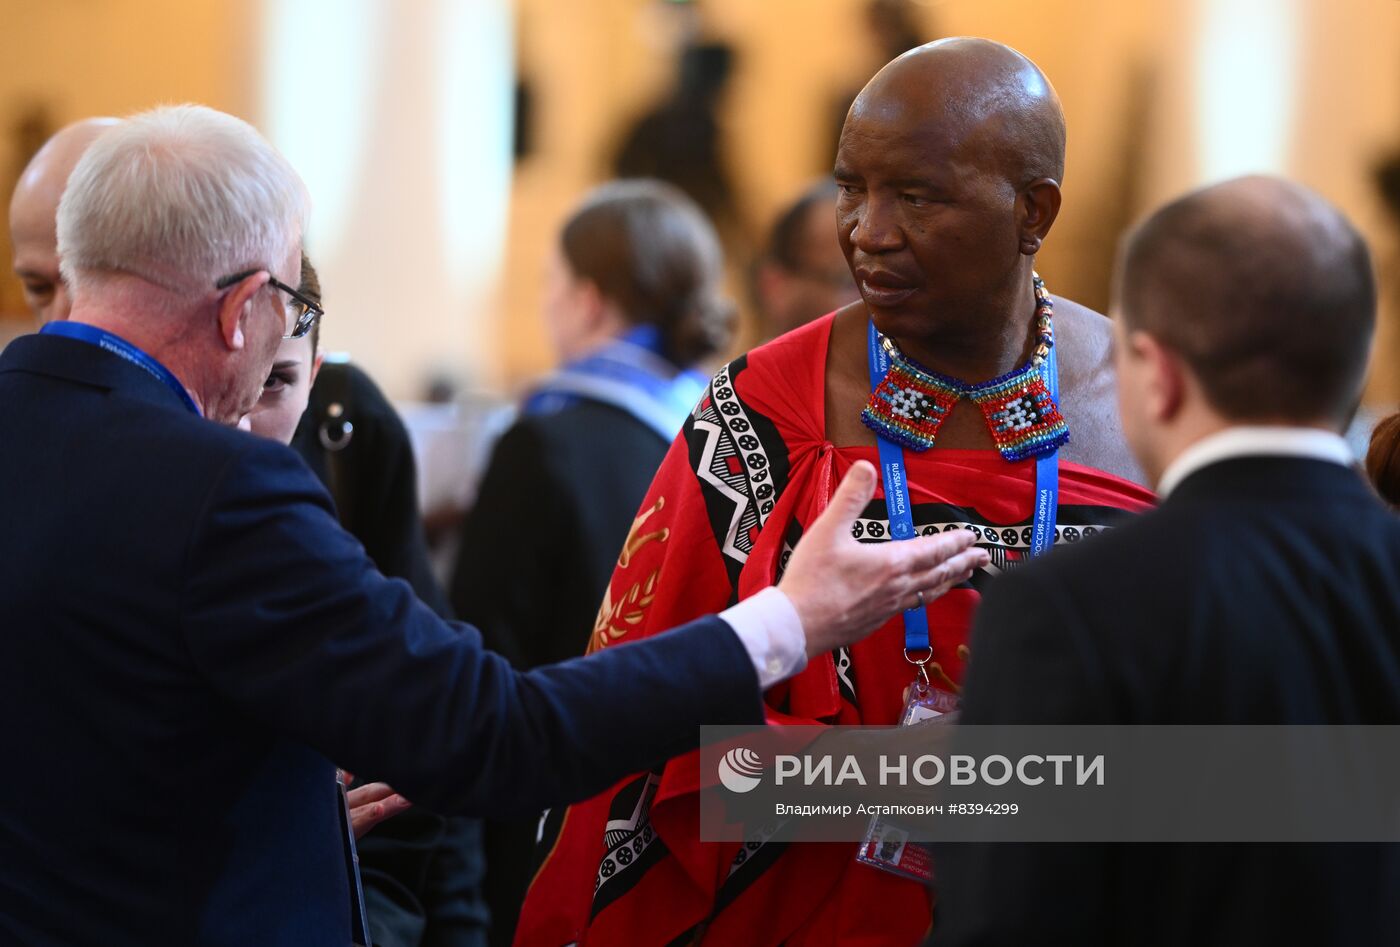 Международная парламентская конференция "Россия-Африка"